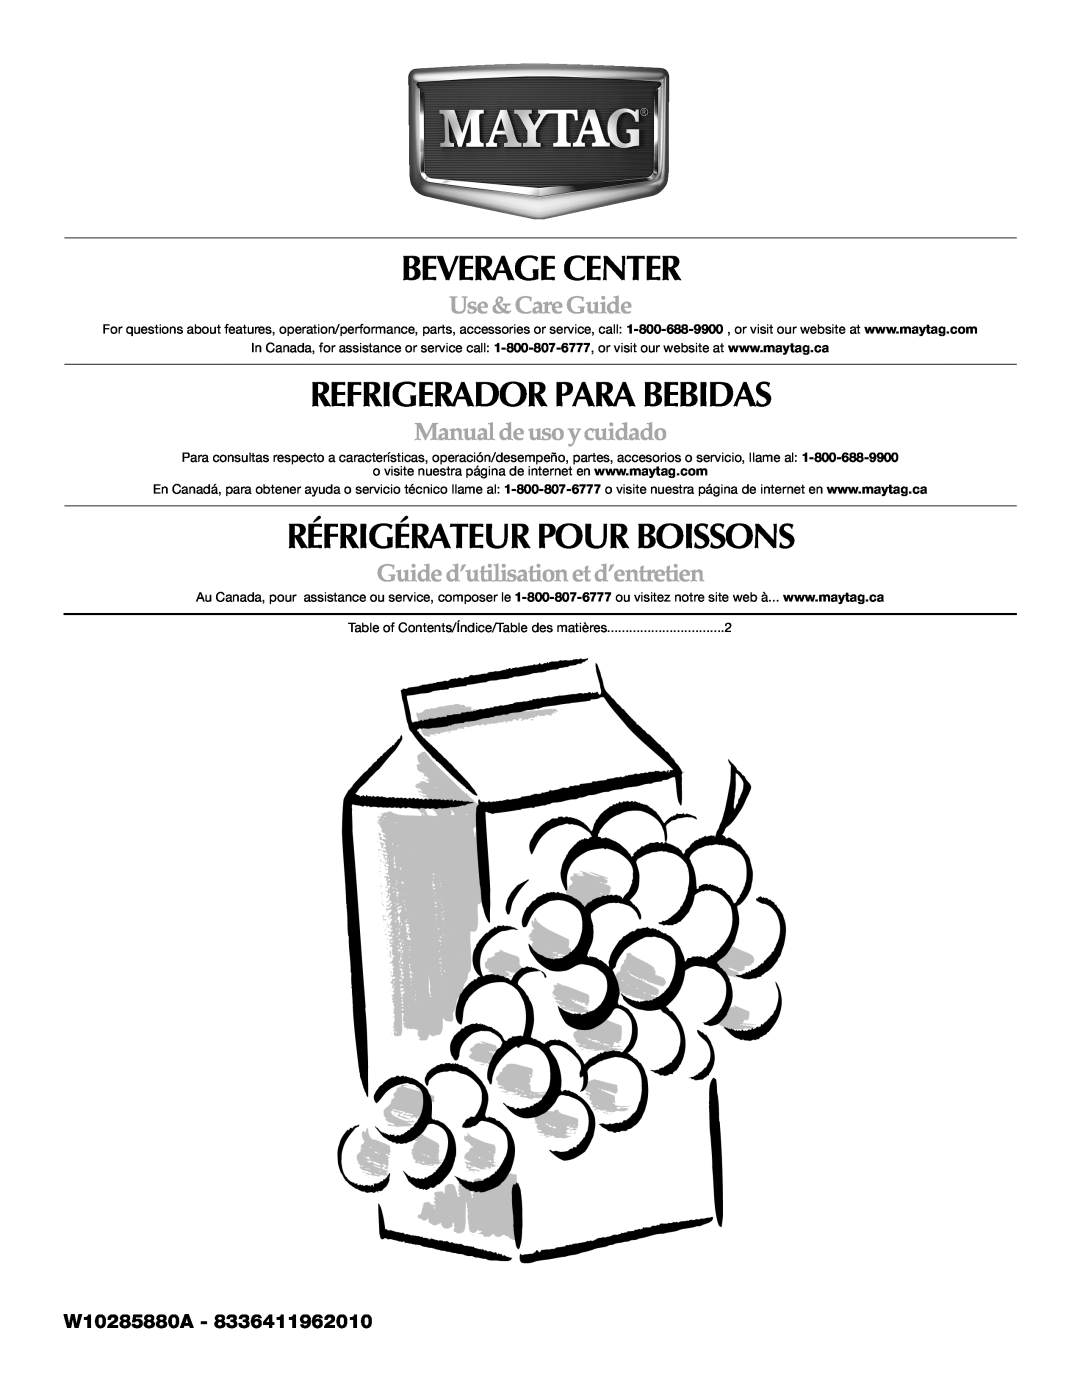 Maytag W10285880A - 8336411962010 manual Beverage Center, Refrigerador Para Bebidas, Réfrigérateur Pour Boissons 